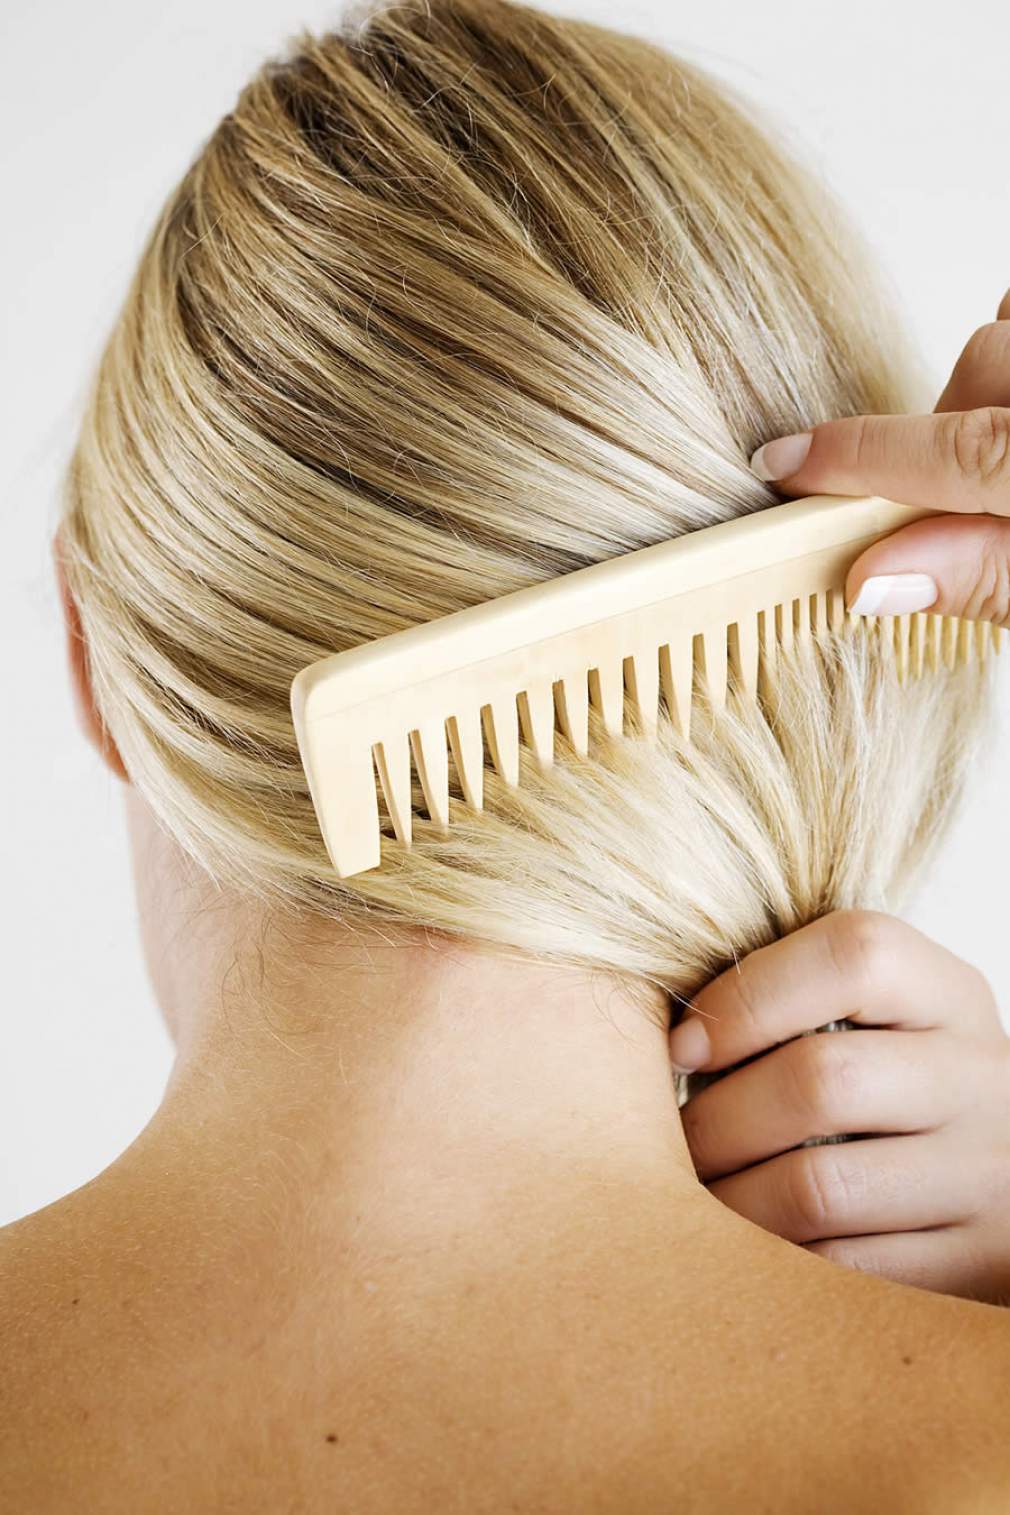 Sem salões durante a quarentena, esses 10 erros em casa podem danificar os fios do seu cabelo